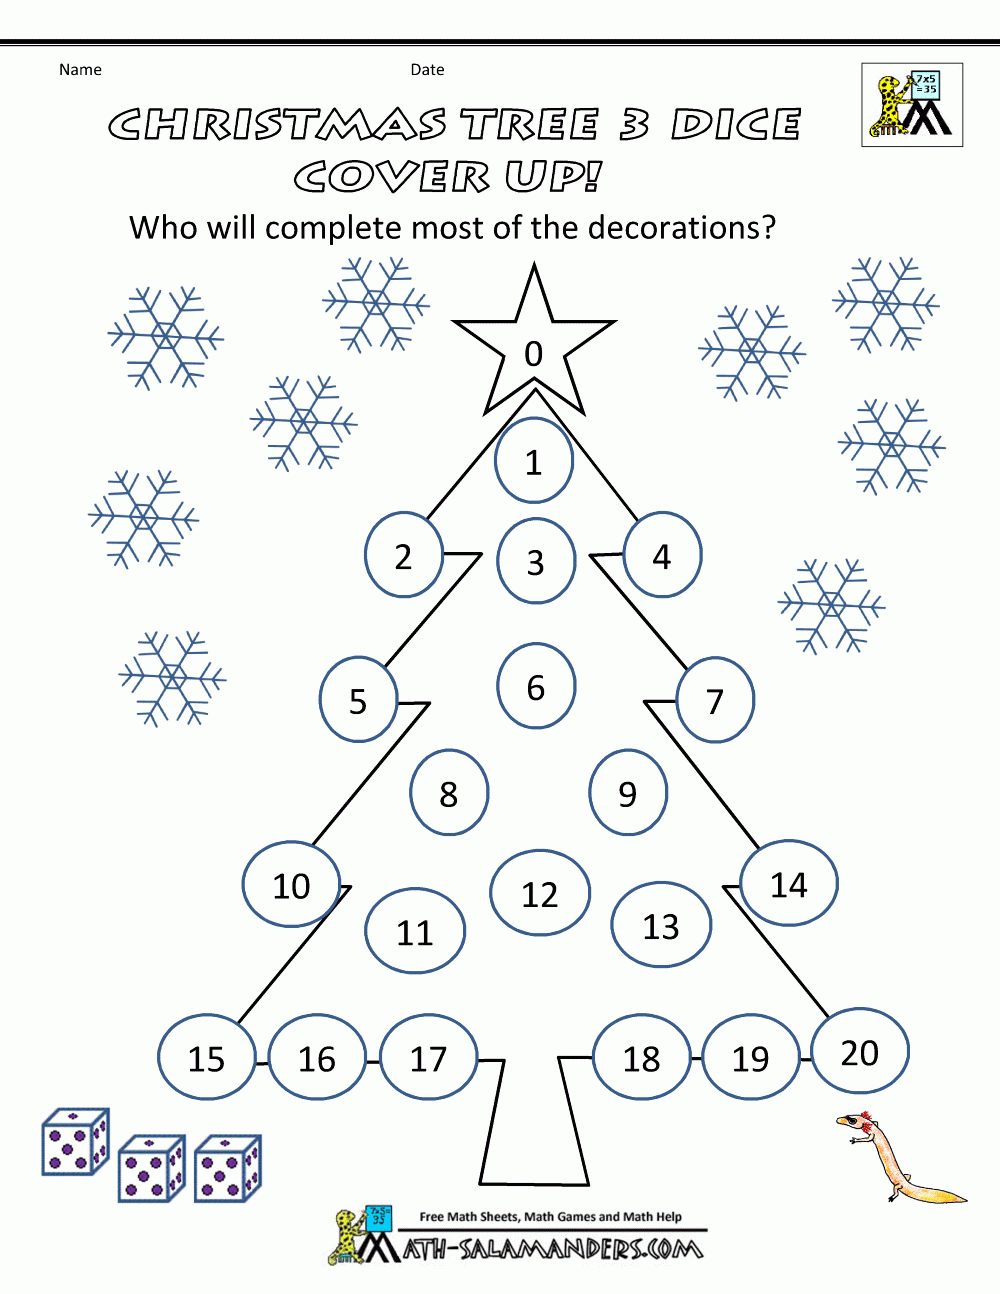 Christmas Math Games